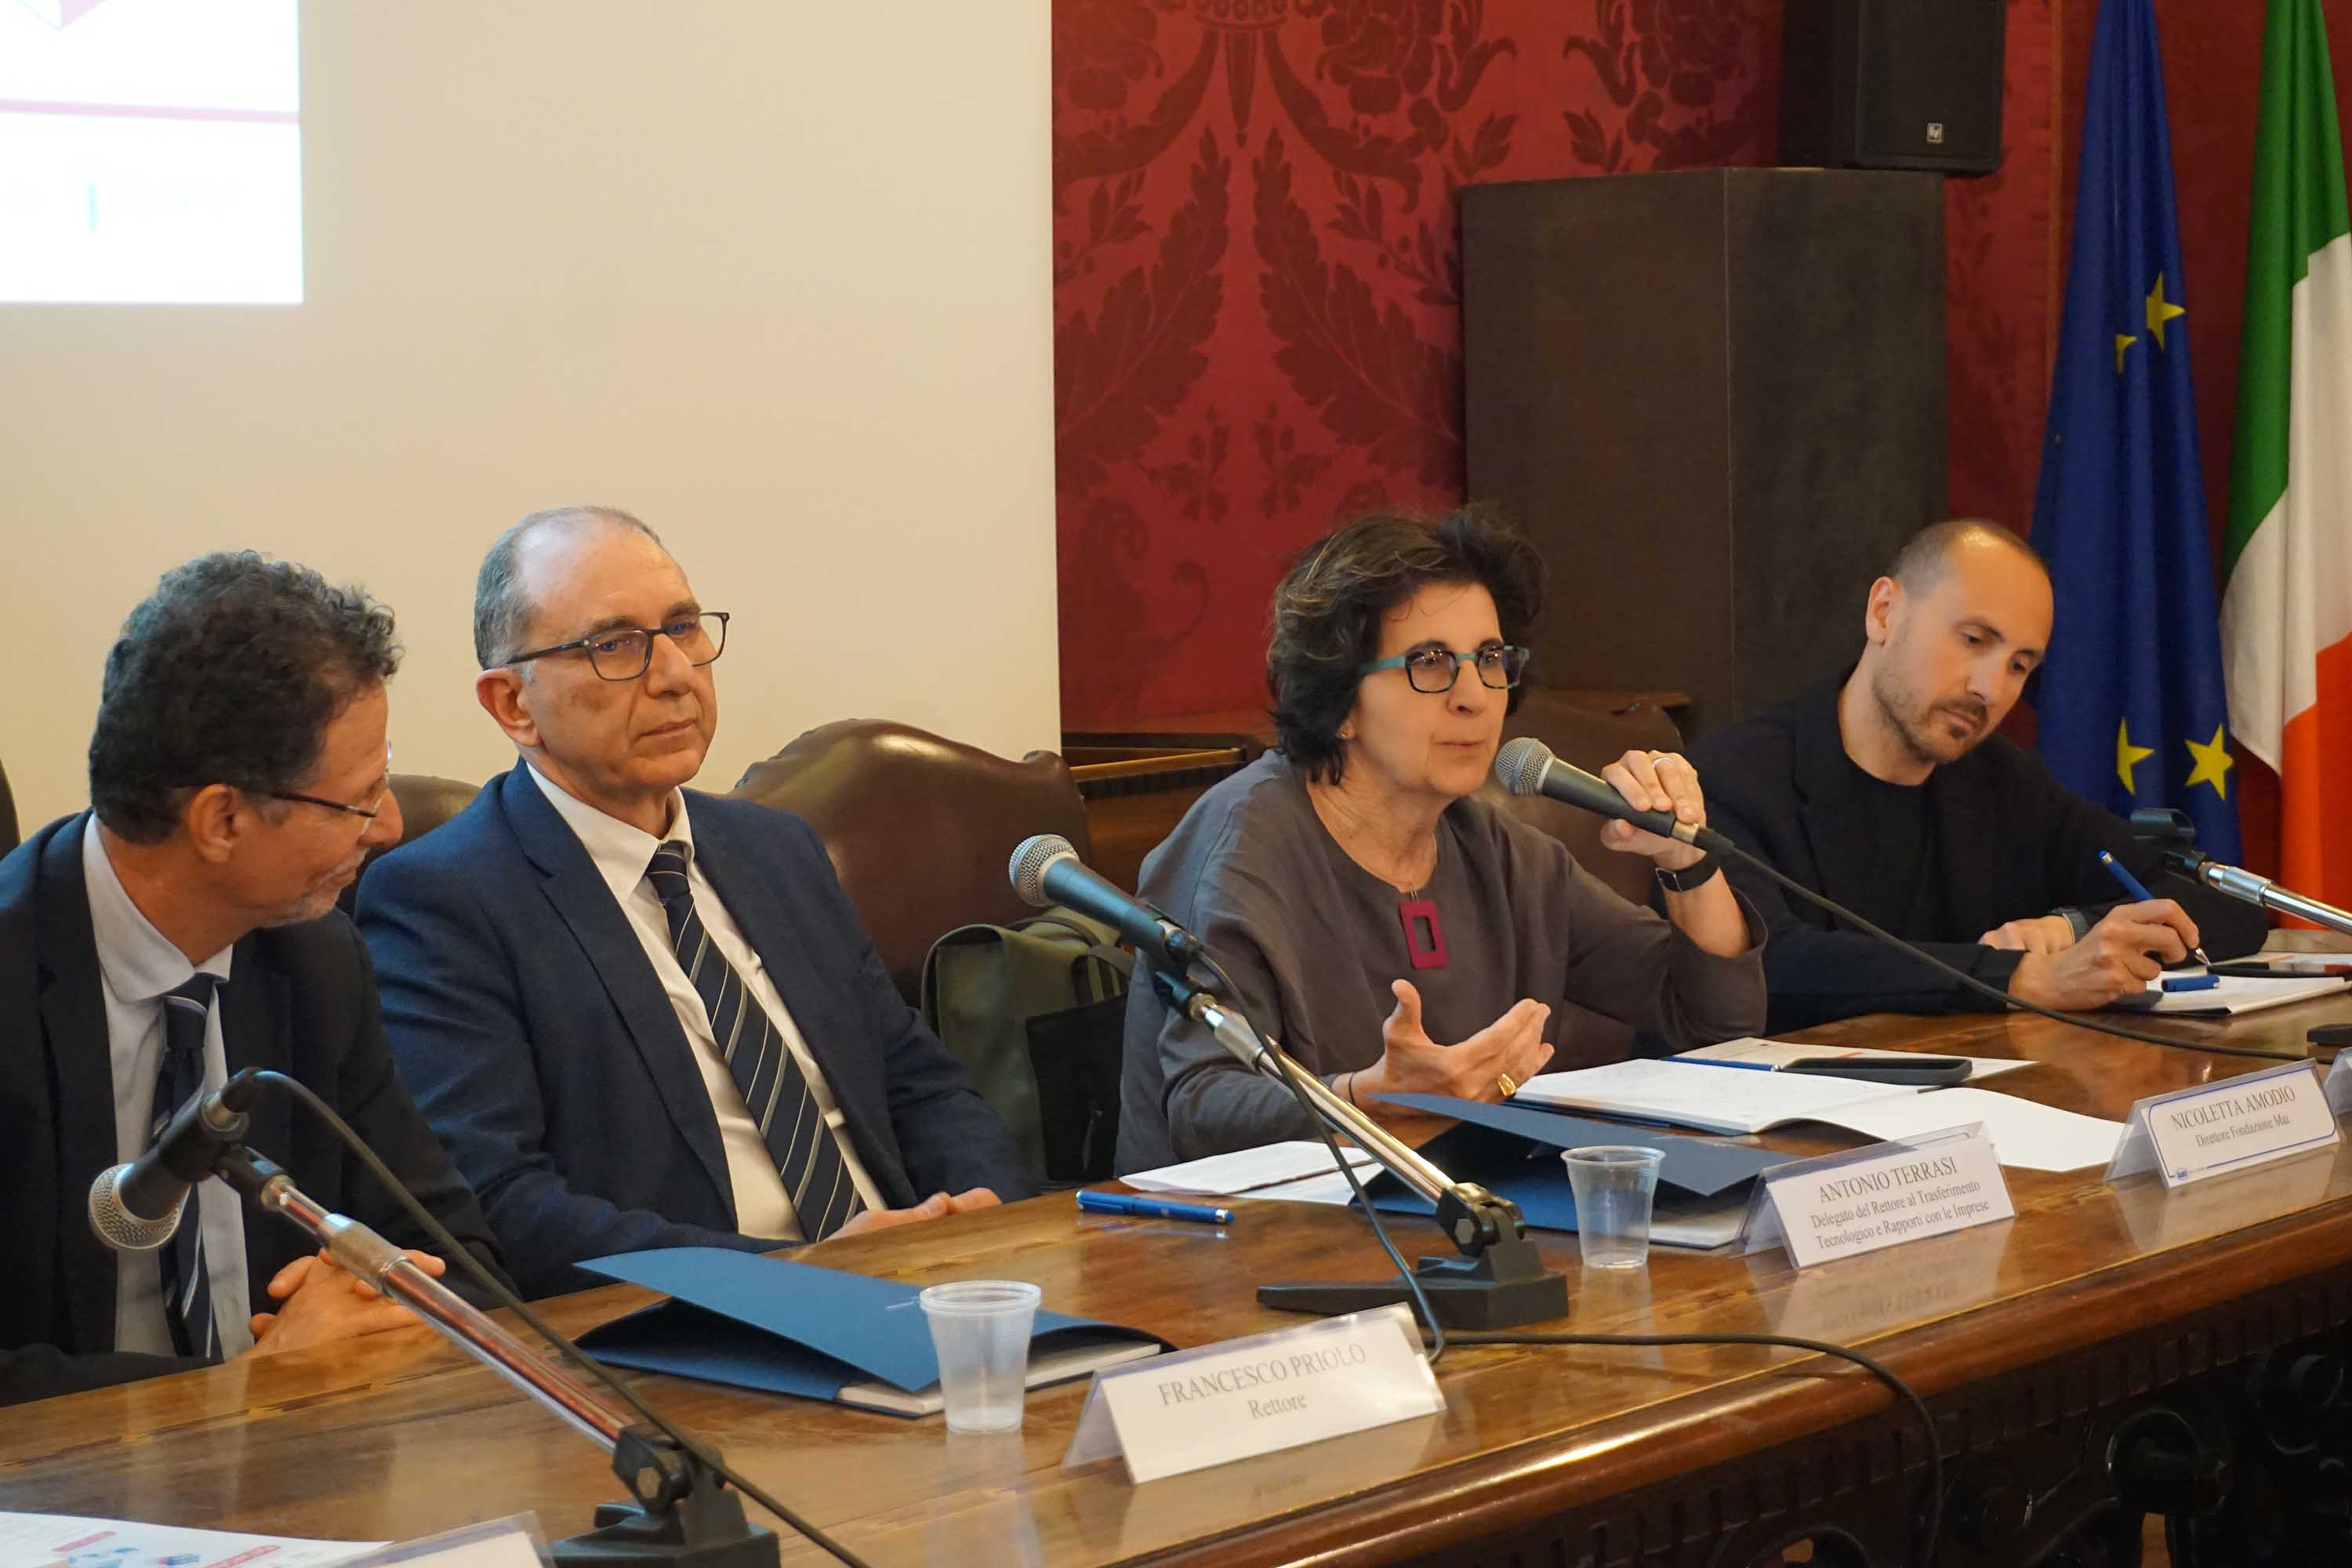 In foto da sinistra Francesco Priolo, Antonio Terrasi, Nicoletta Amodio e Antonio Perdichizzi